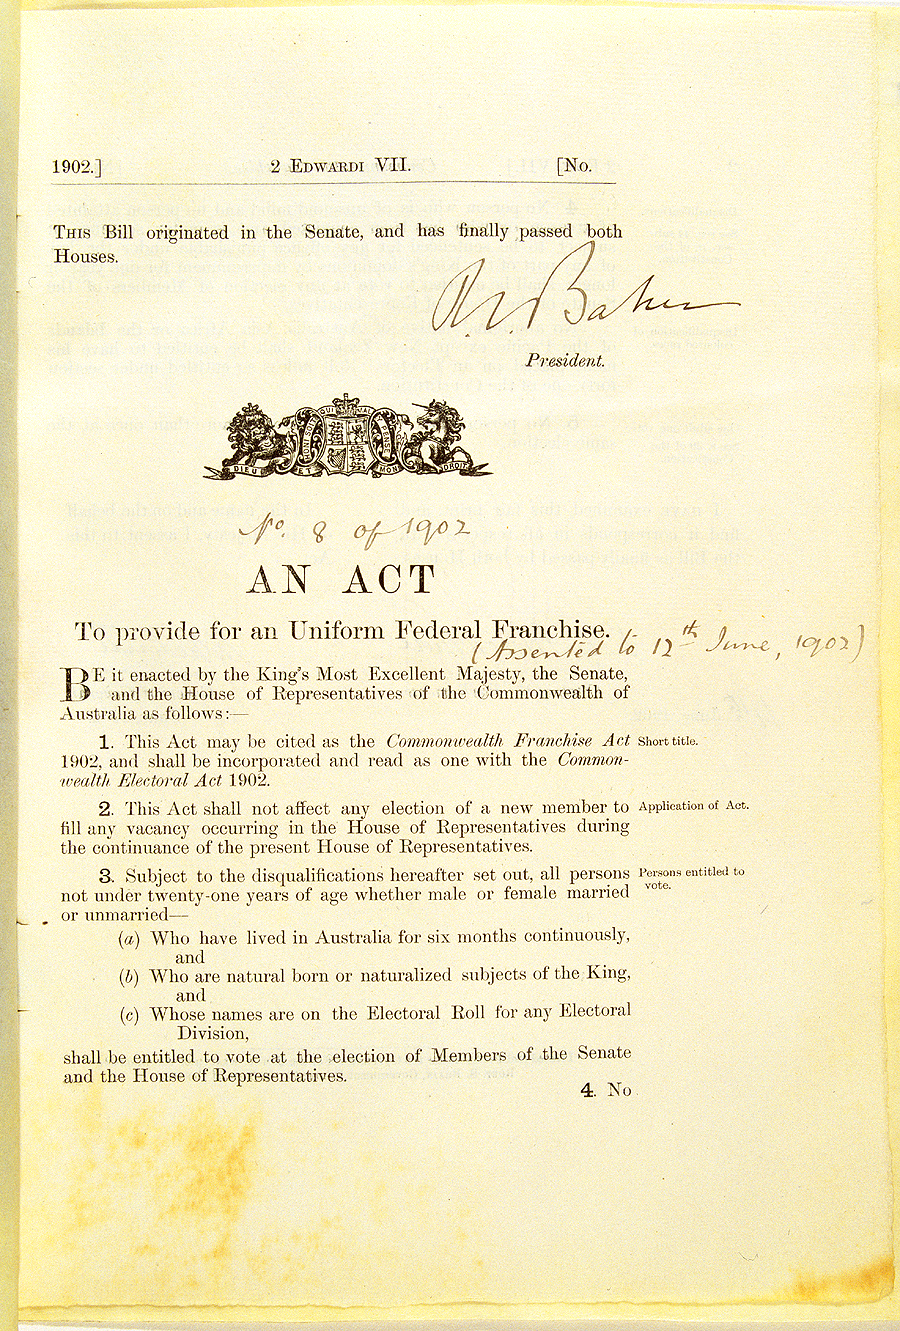 호주 연방 참정권법

1902년 6월 12일 호주 총독이 서명한 이 법에 따라 호주는 뉴질랜드에 이어 세계에서 두 번째로 여성들에게 참정권을 부여.
